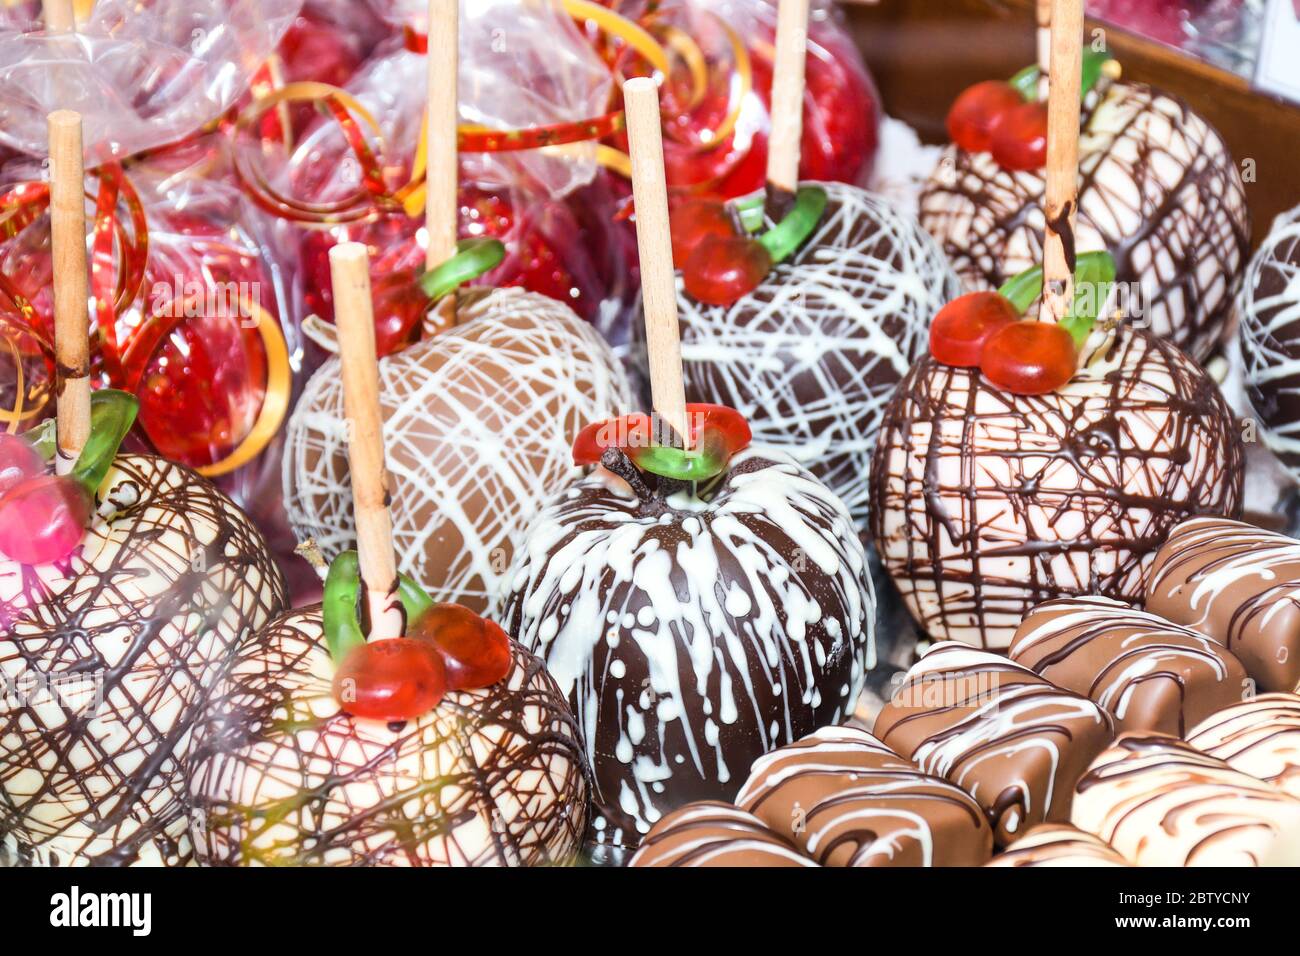 Pommes de bonbons au caramel rouge à glaçage sucré sur des bâtonnets à vendre sur le marché des agriculteurs ou sur le salon national. Thanksgiving et Halloween caramel rouge maison glacé caramel caramel Banque D'Images